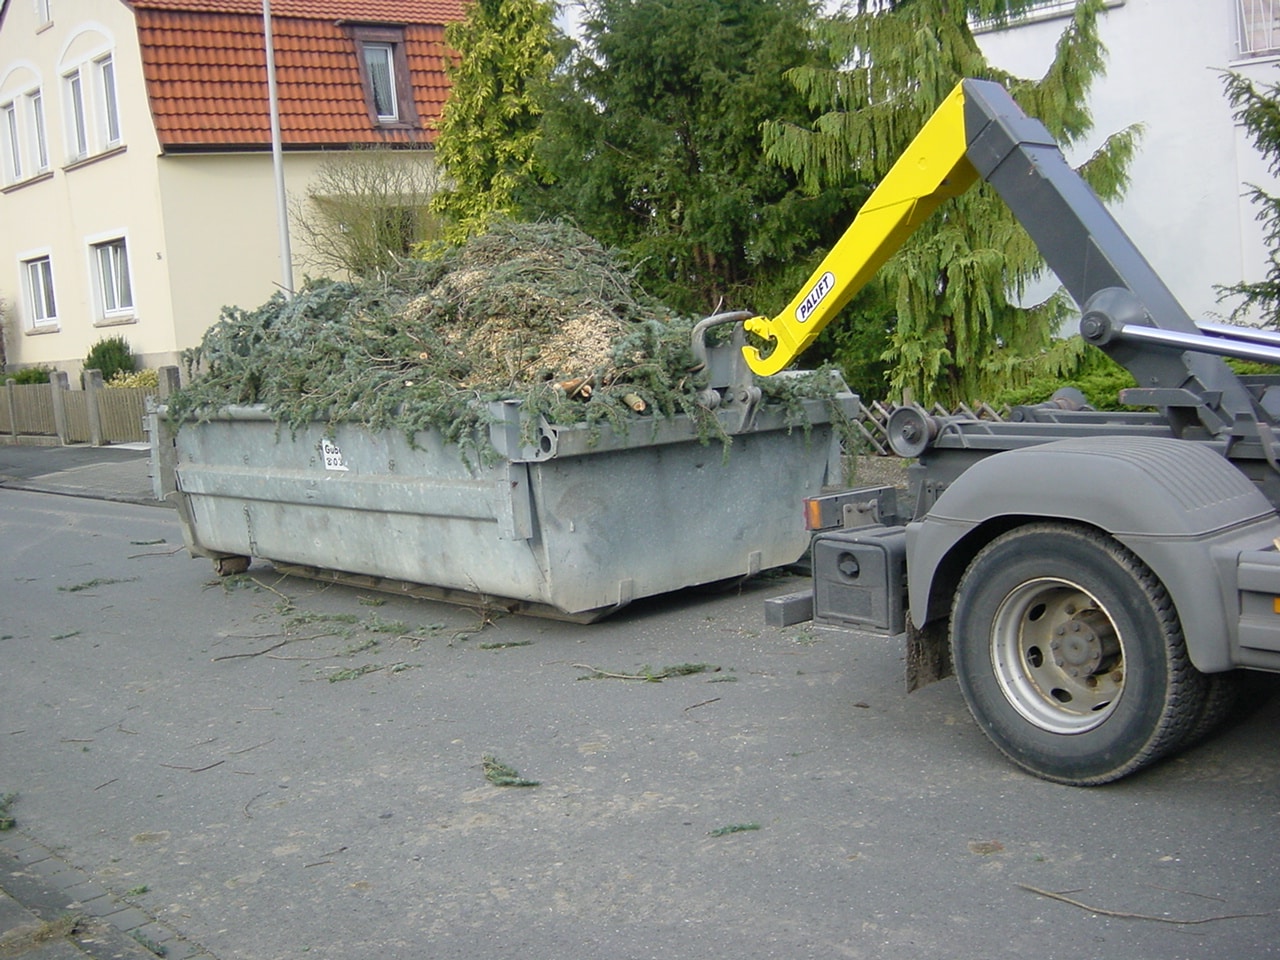 11Muldendienst für Baumreste nach Sturm in Bad Oeynhausen